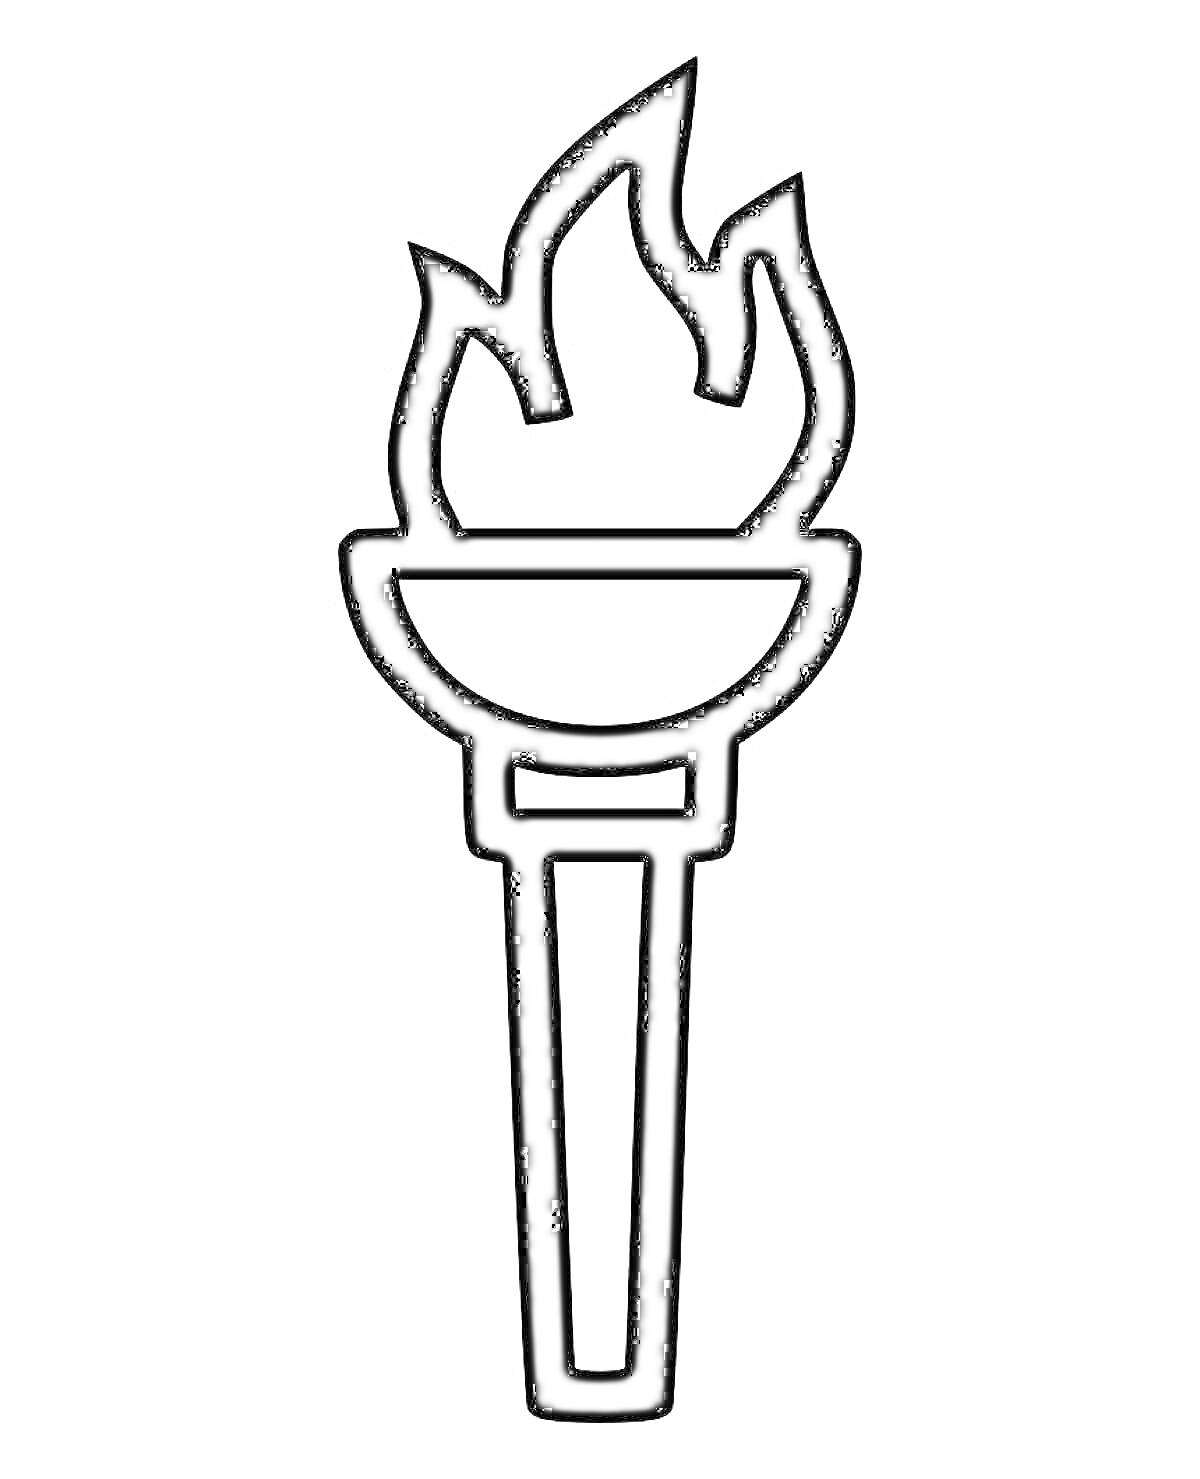 Факел с пламенем и ручкой